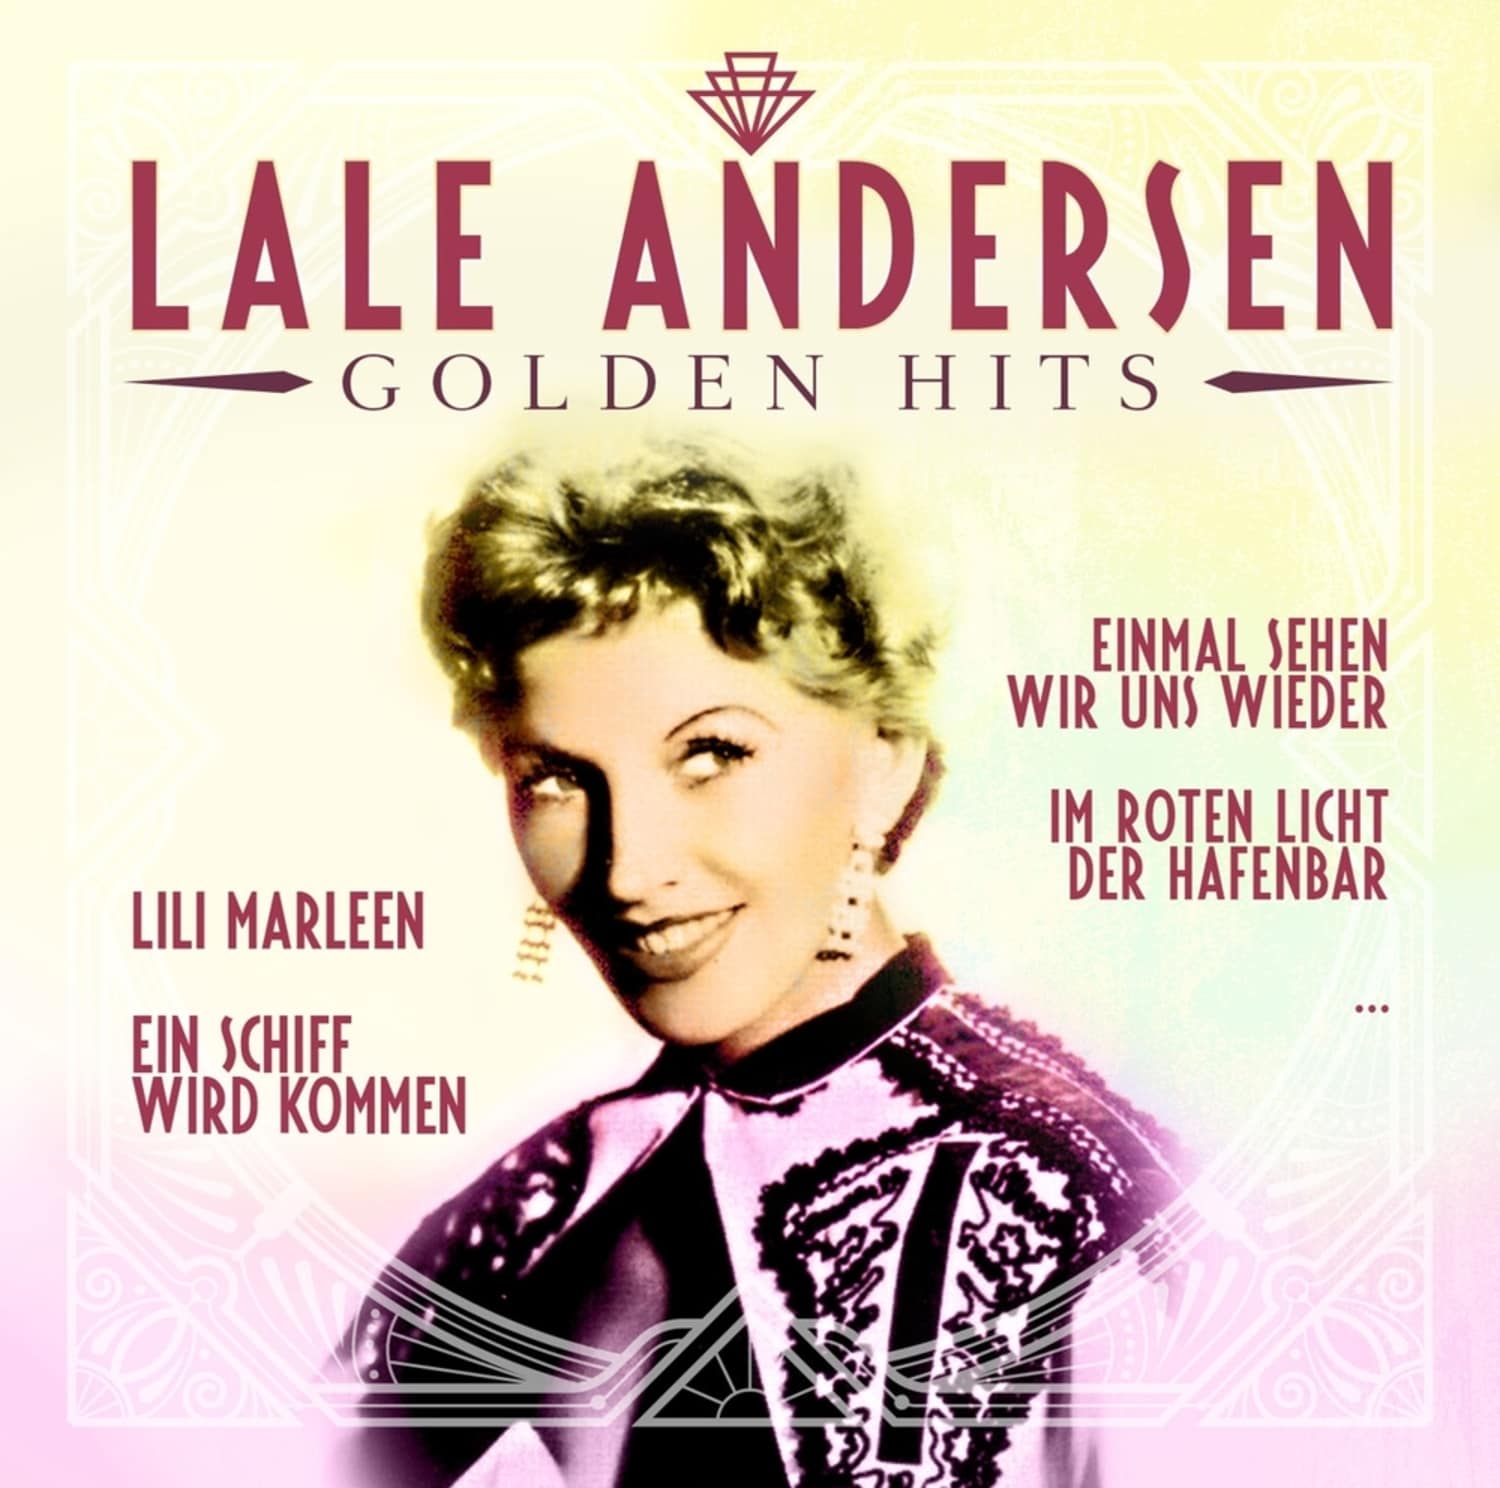 Lale Andersen - GOLDEN HITS 